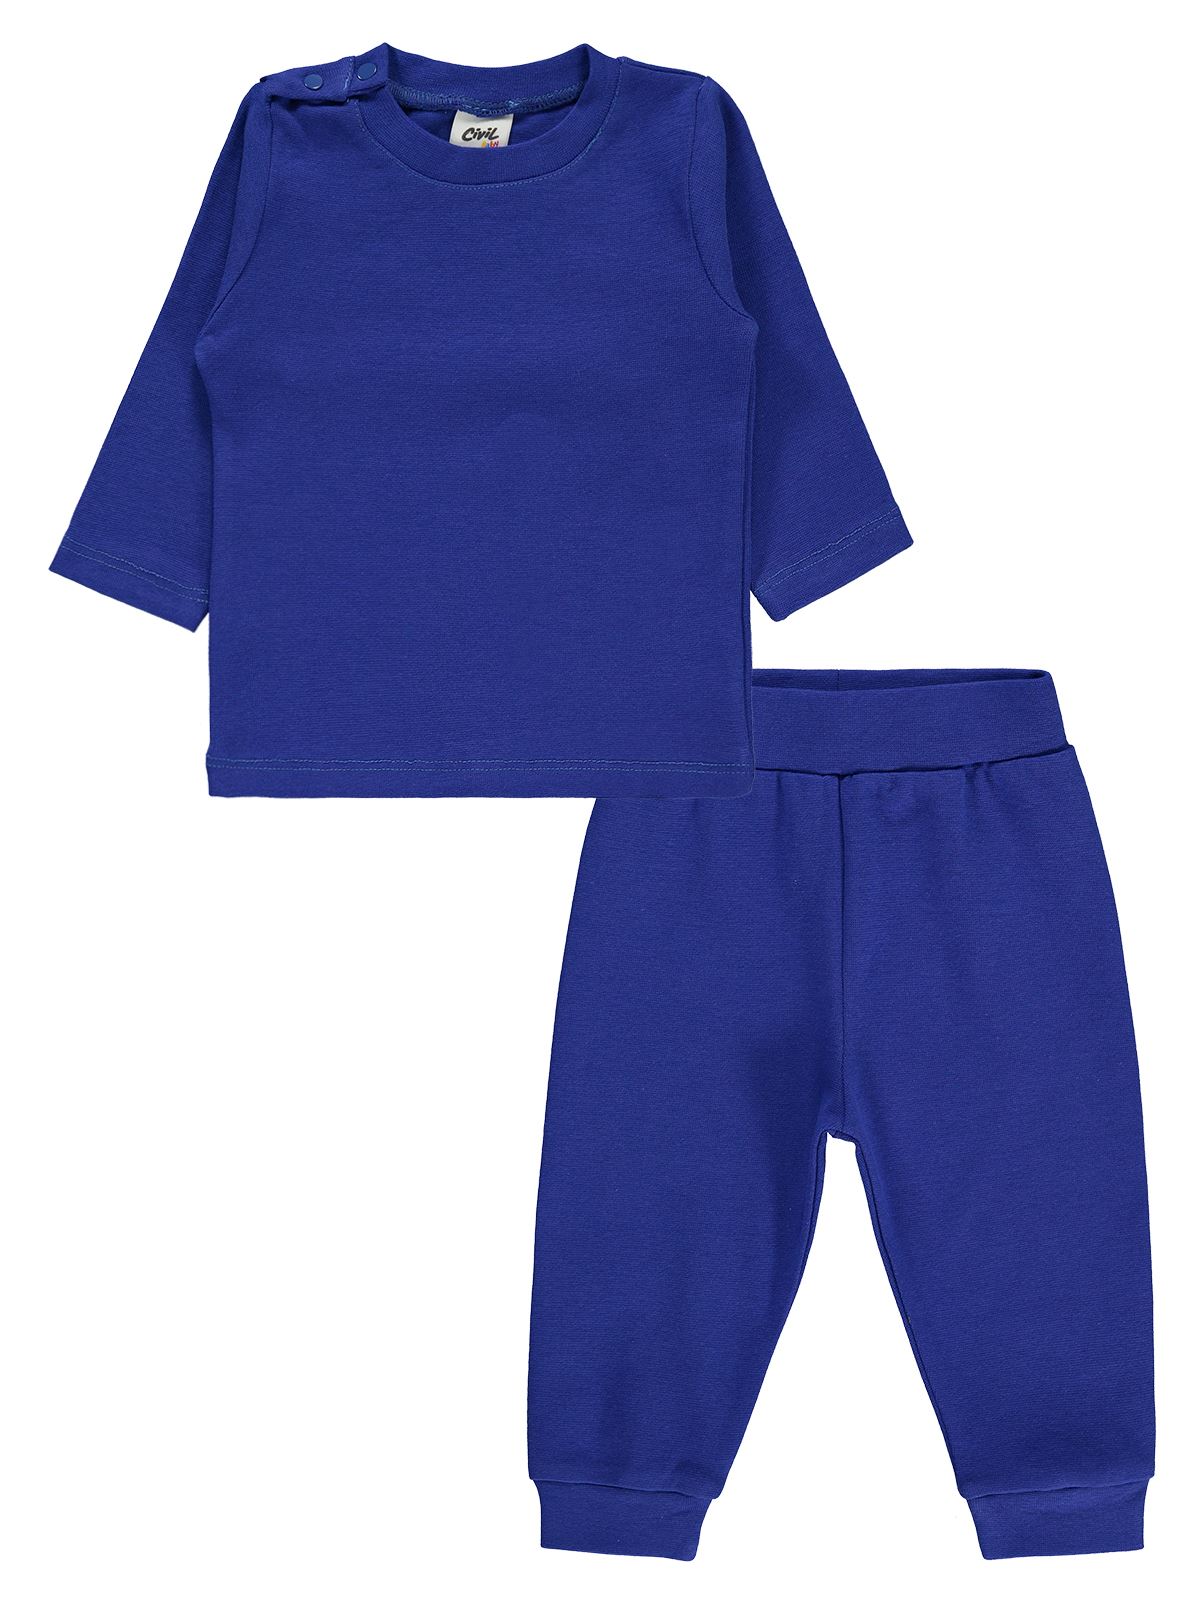 Civil Baby Bebek Pijama Takımı 6-18 Ay Saks Mavisi